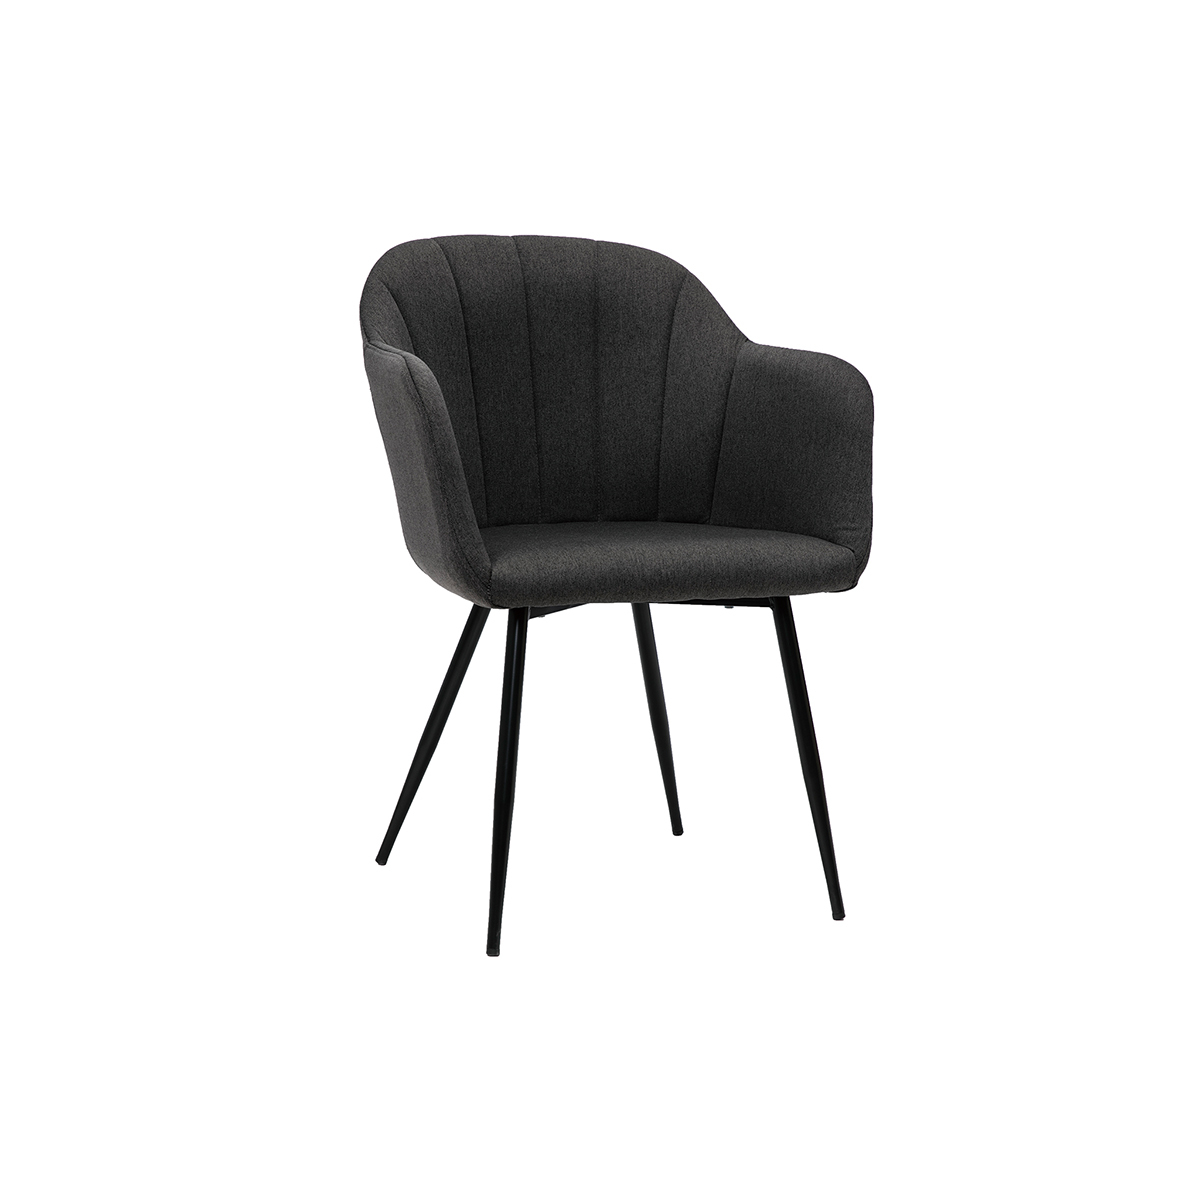 Chaise design en tissu gris foncé et métal noir MILLY vue1